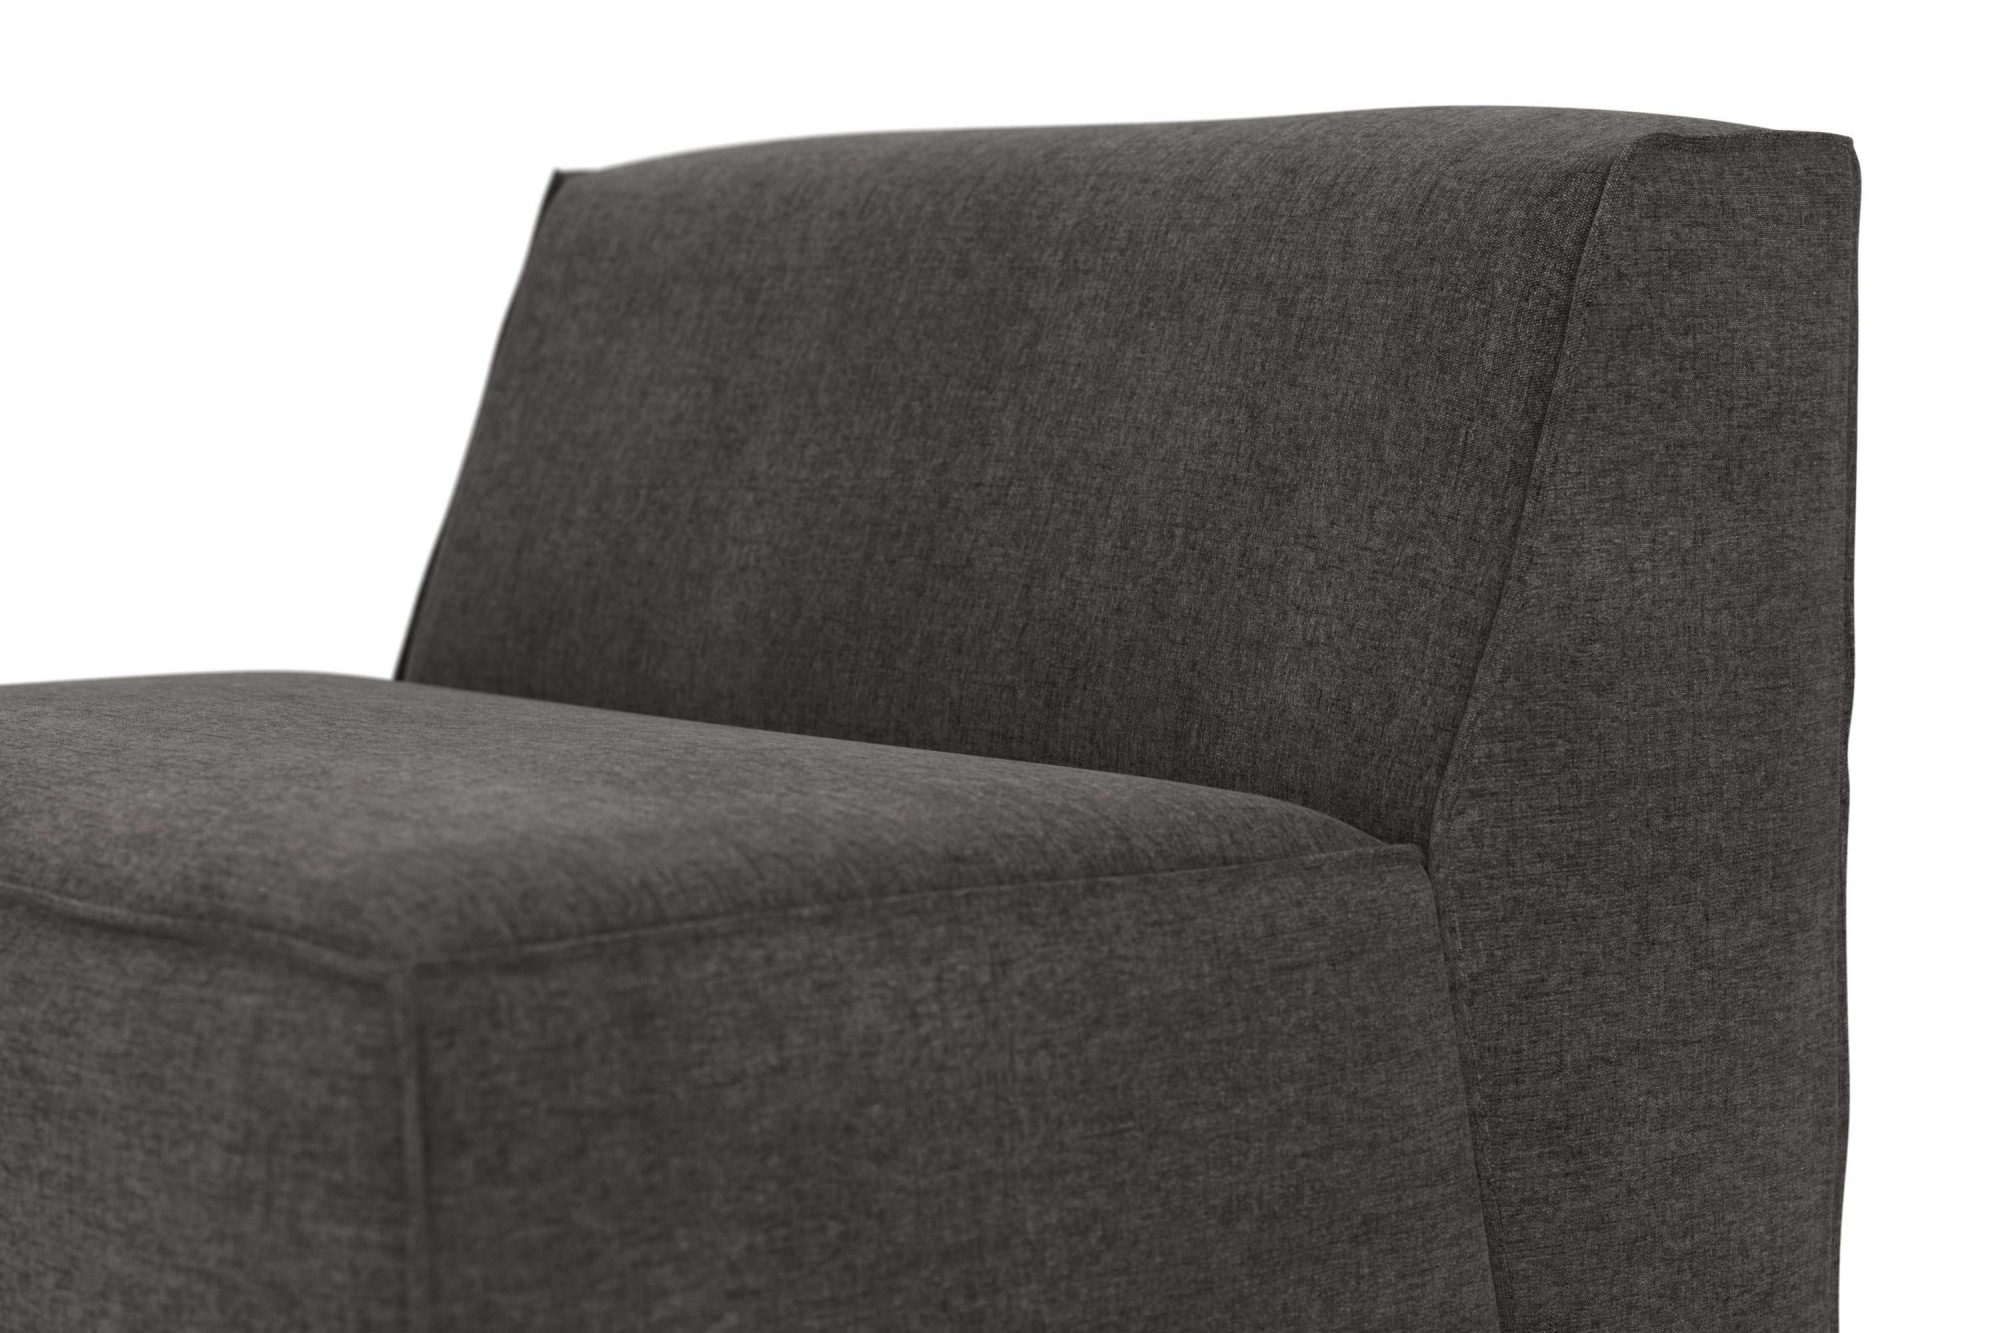 RAUM.ID Sofa-Mittelelement »Norvid«, modular, mit Taschenfederkern, große Auswahl an Modulen